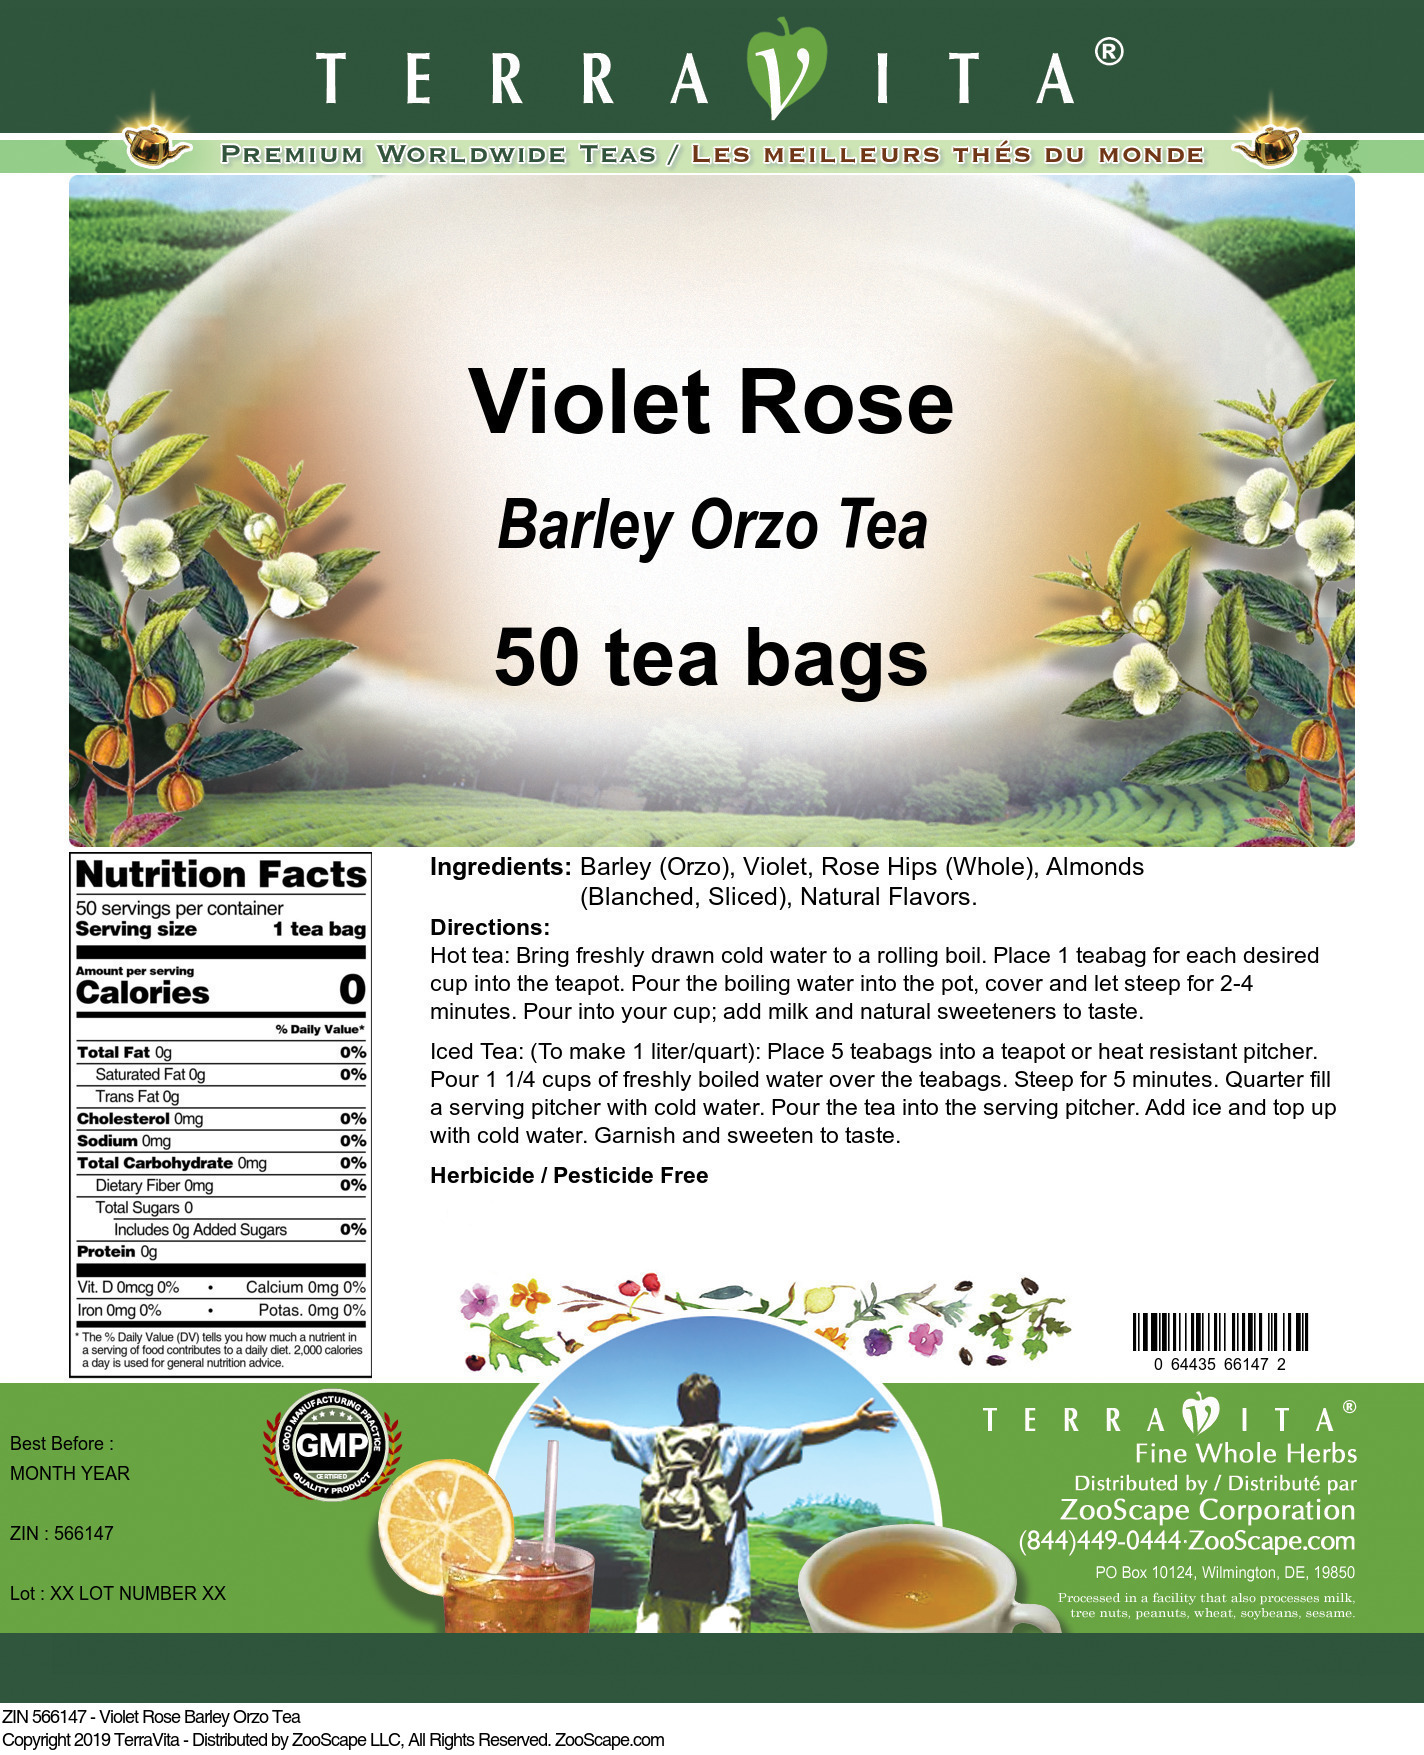 Violet Rose Barley Orzo Tea - Label